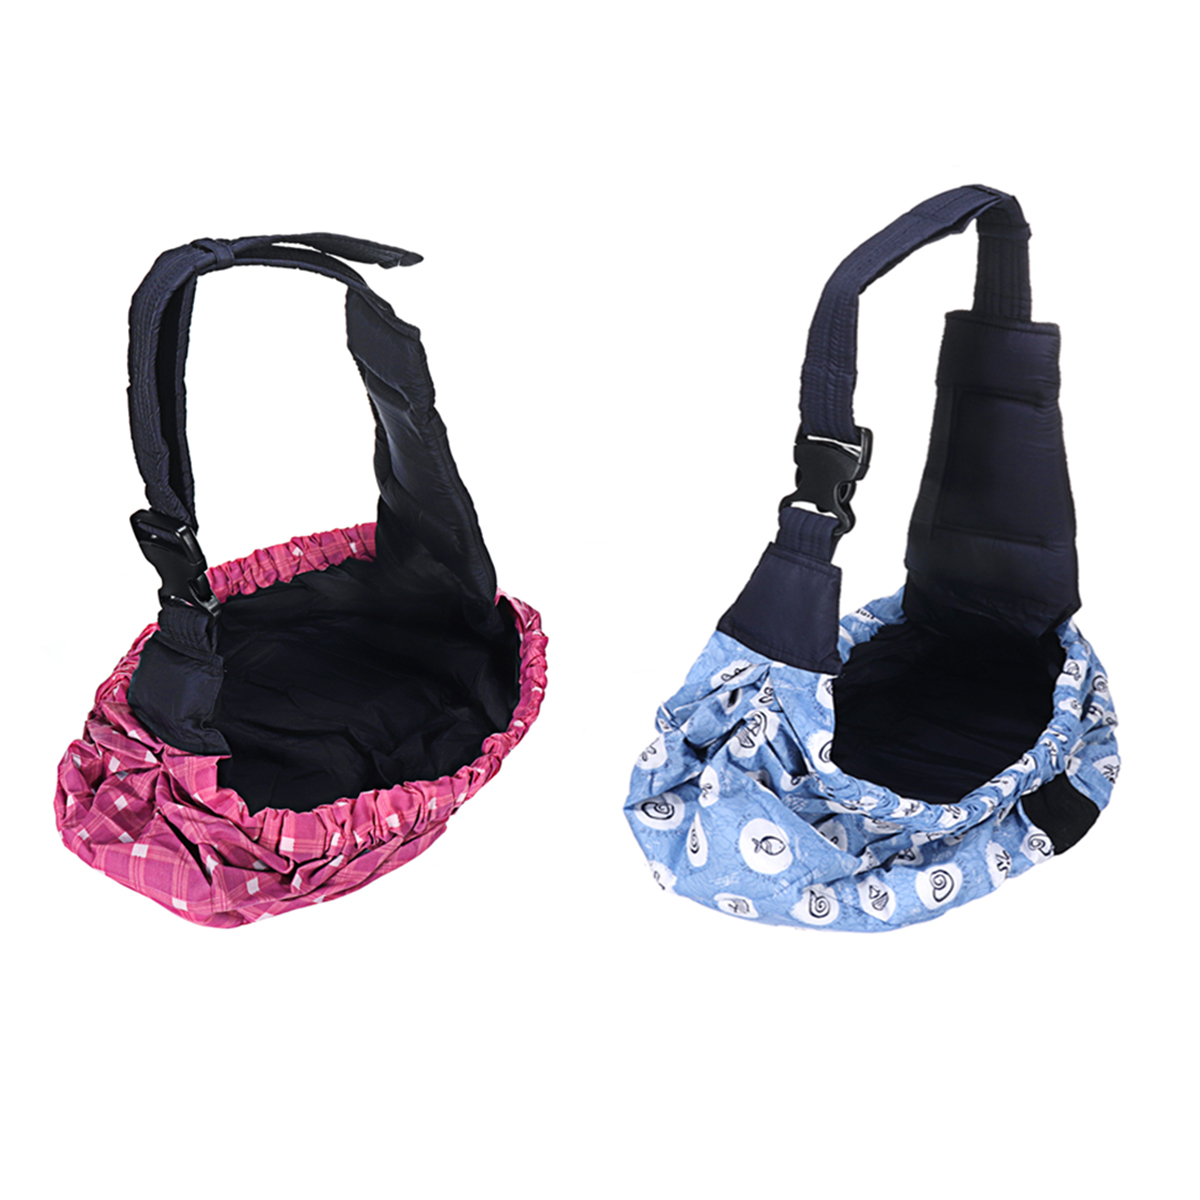 Infant-Baby-Carrier-Bag-Breathable-Adjustable-Shoulder-Bag-Outdoor-Travel-1866497-2